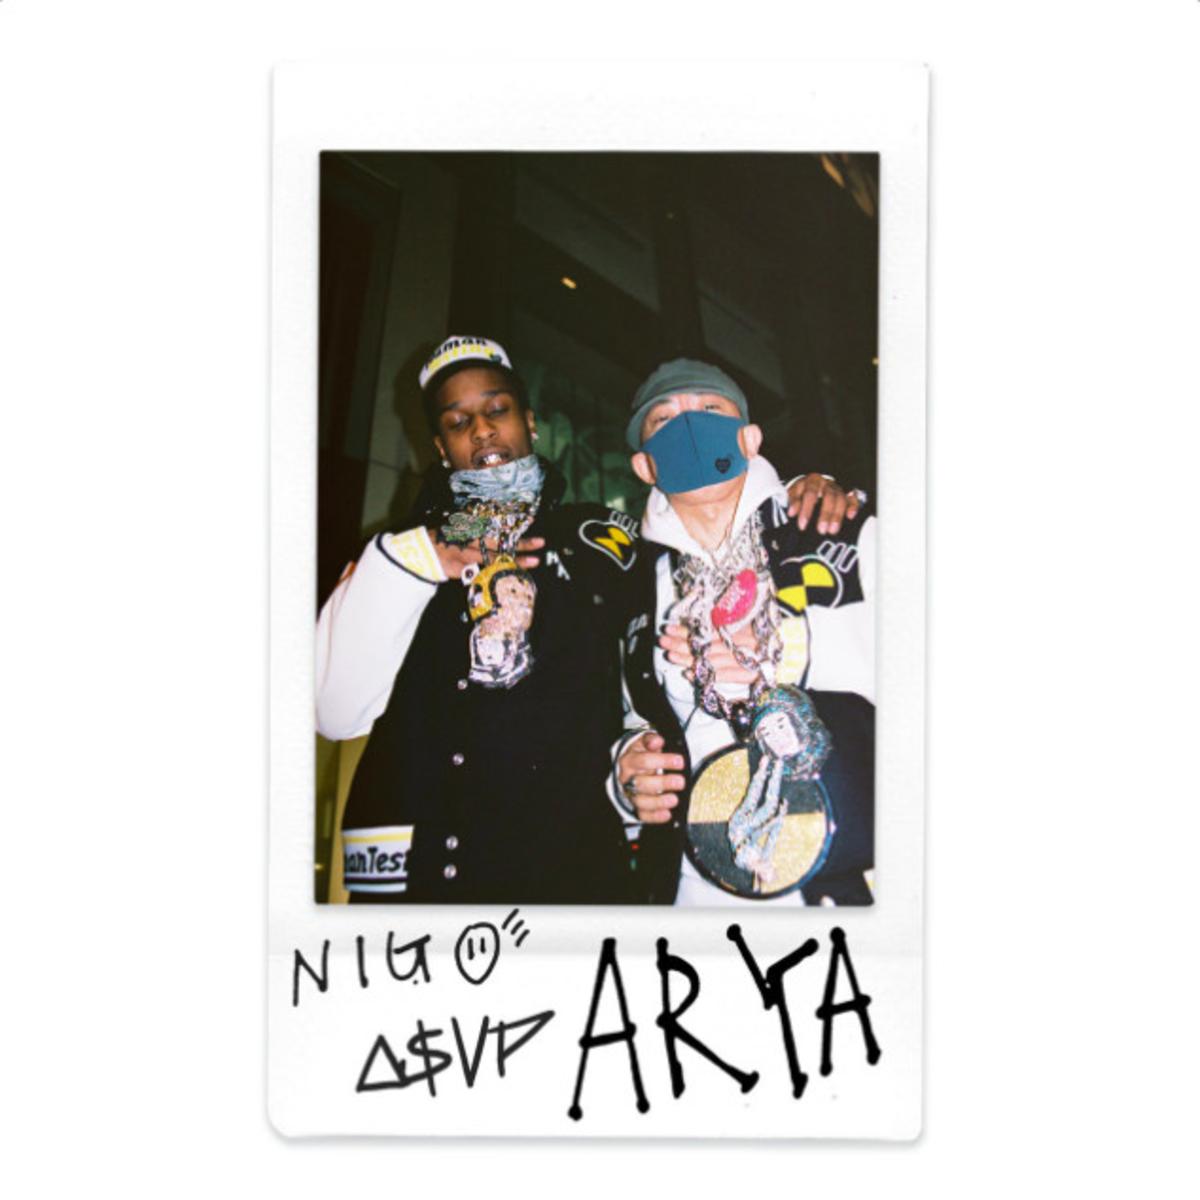 NIGO & A$AP Rocky Unite For “Arya”